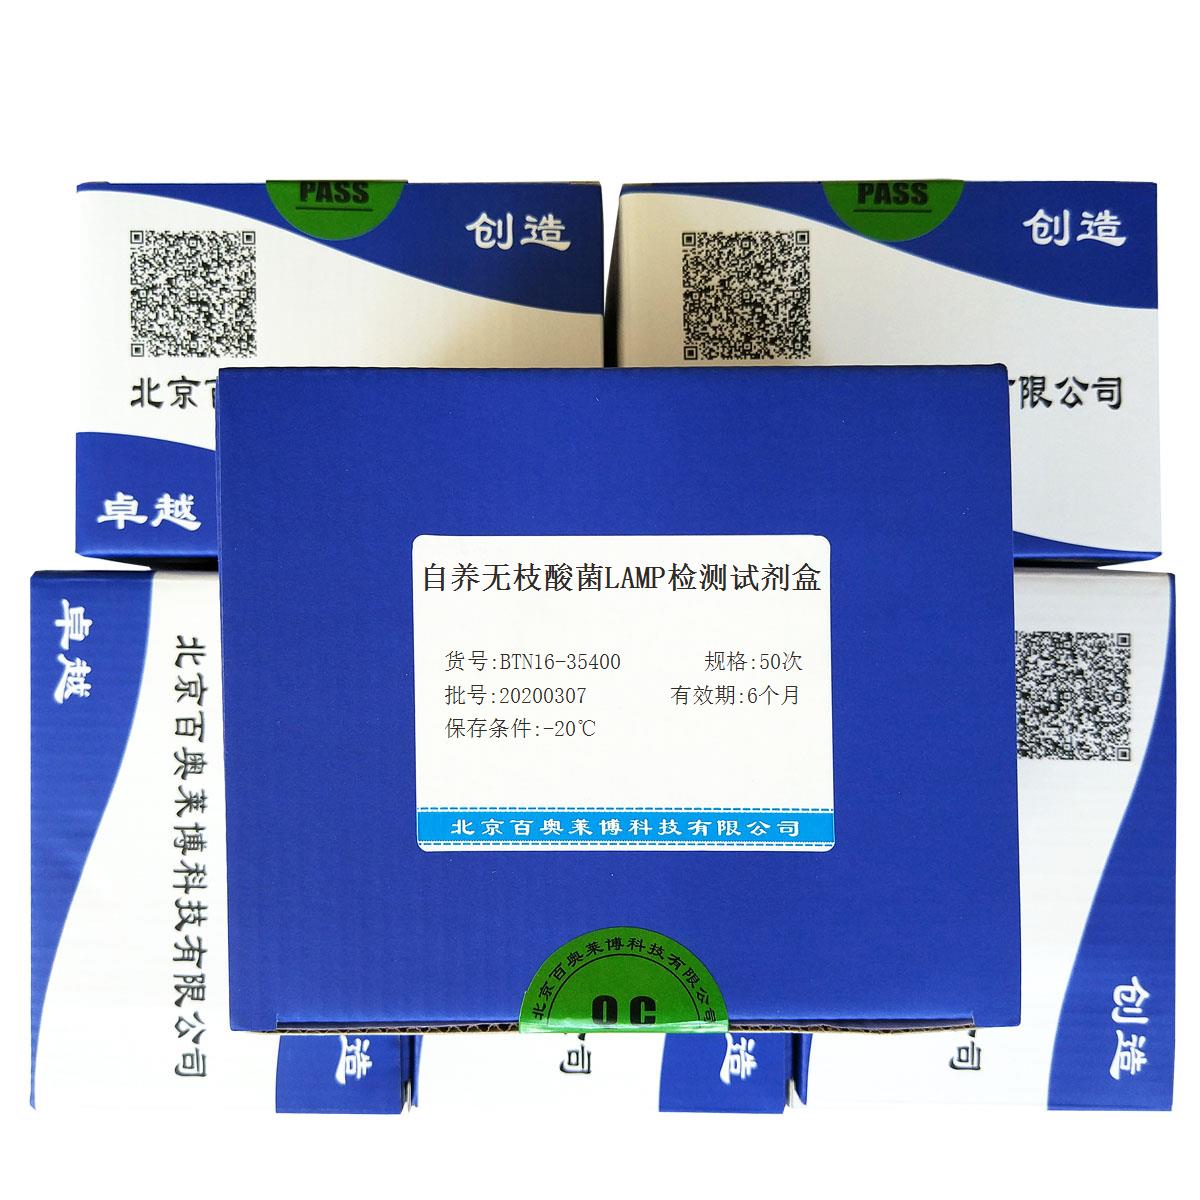 自养无枝酸菌LAMP检测试剂盒北京价格